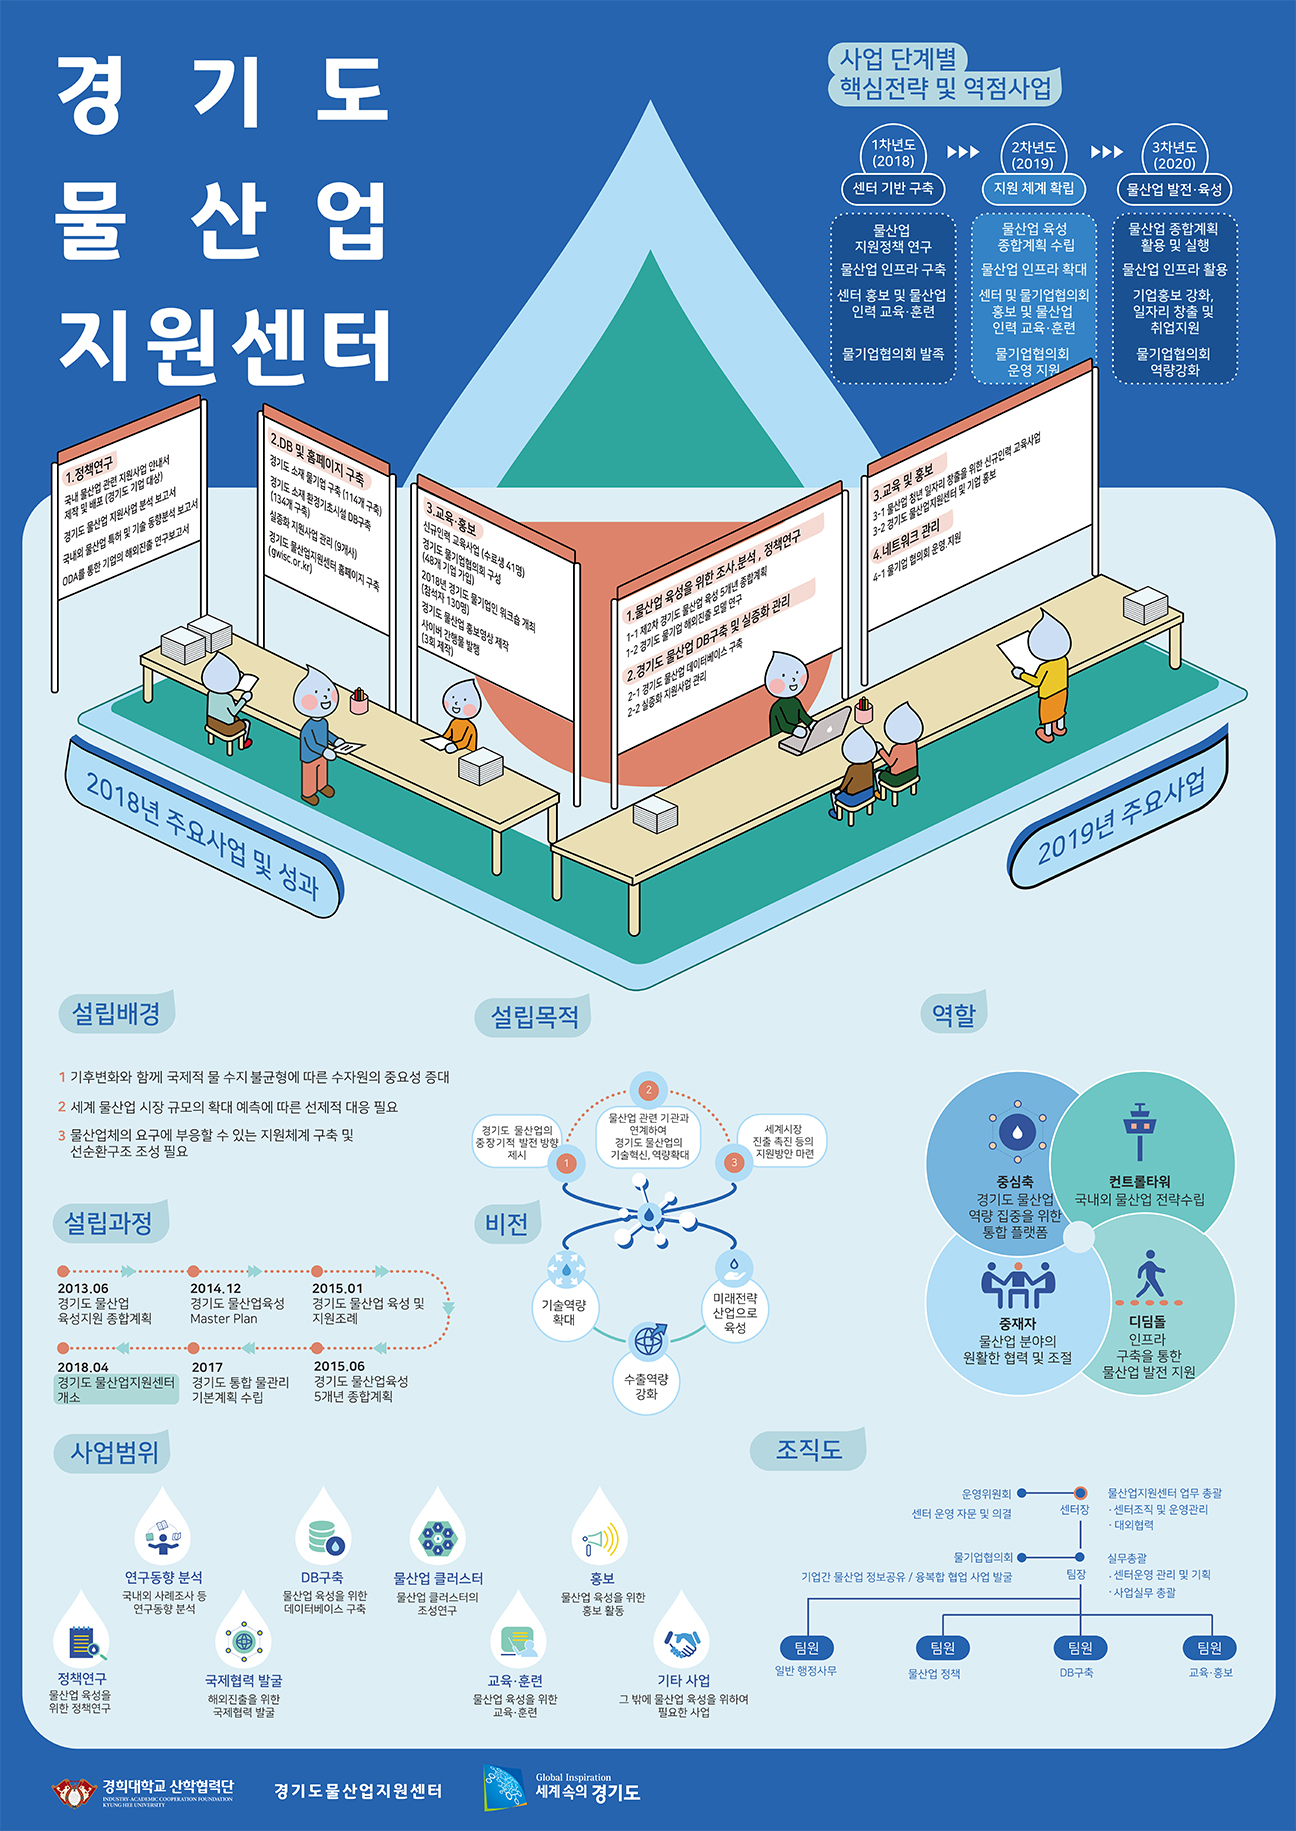 경기도 물산업지원센터 소개 포스터 